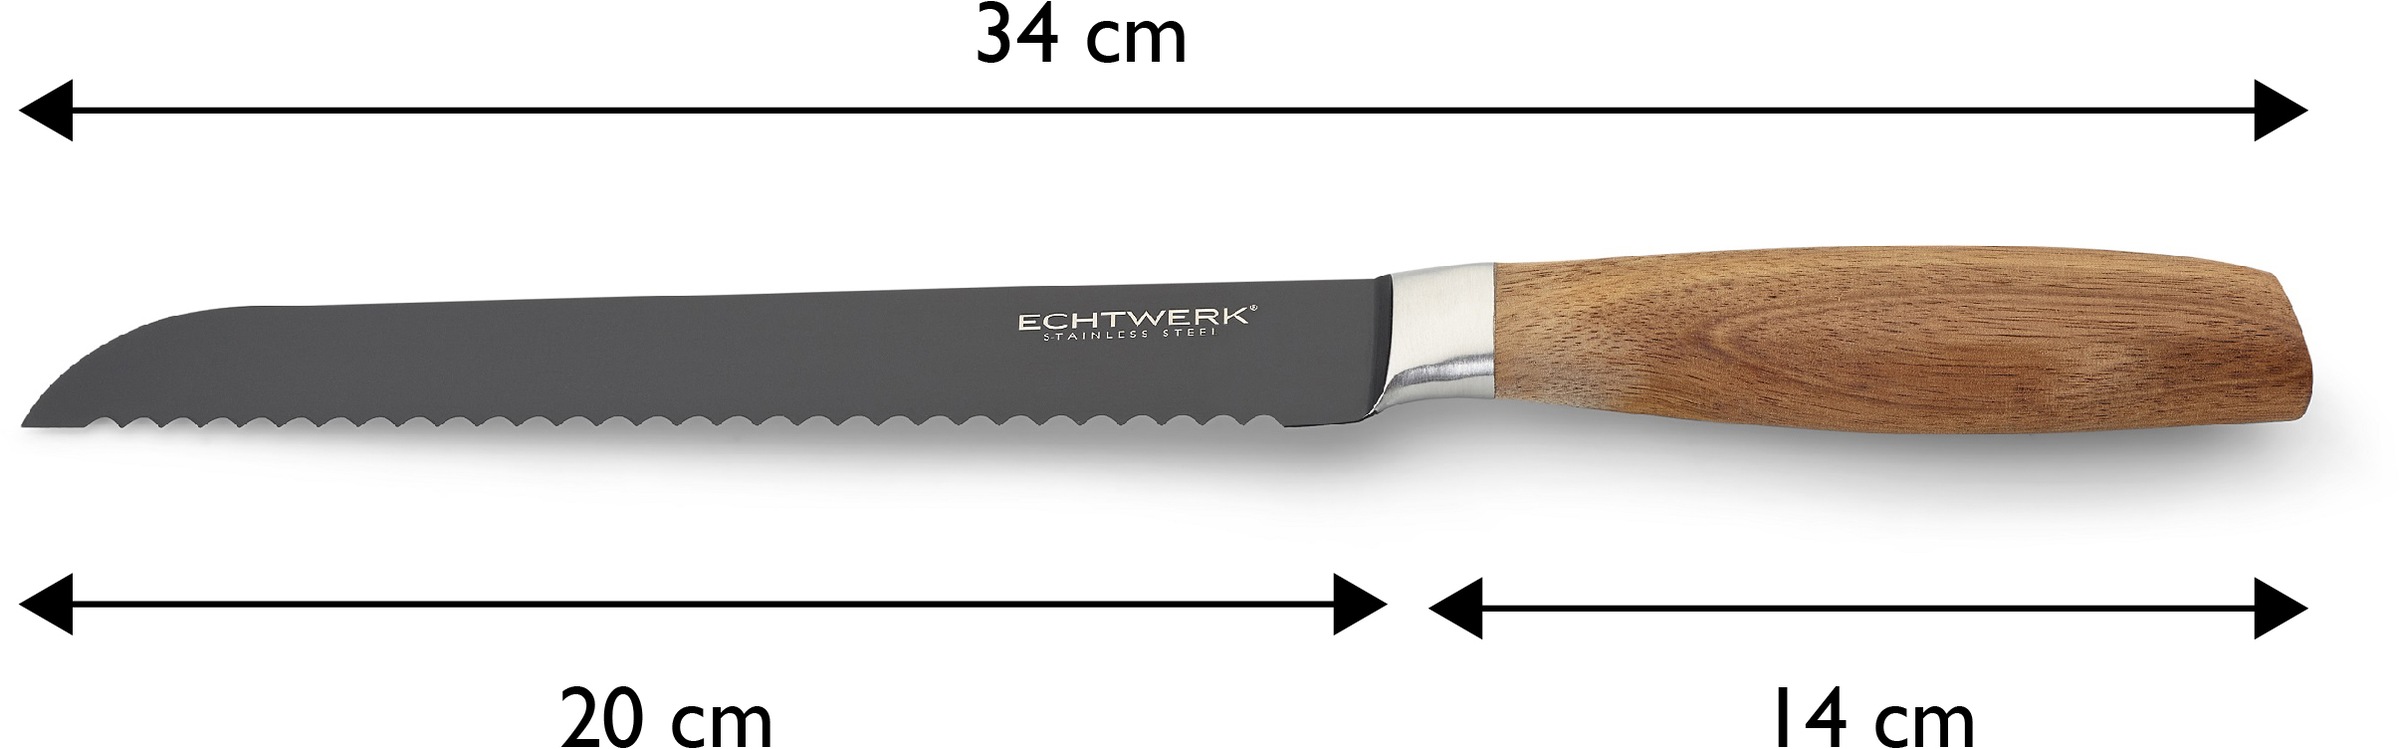 ECHTWERK Brotmesser »Classic«, (1 tlg.), aus hochwertigem Stahl, Akazienholzgriff, Black-Edition, 20 cm